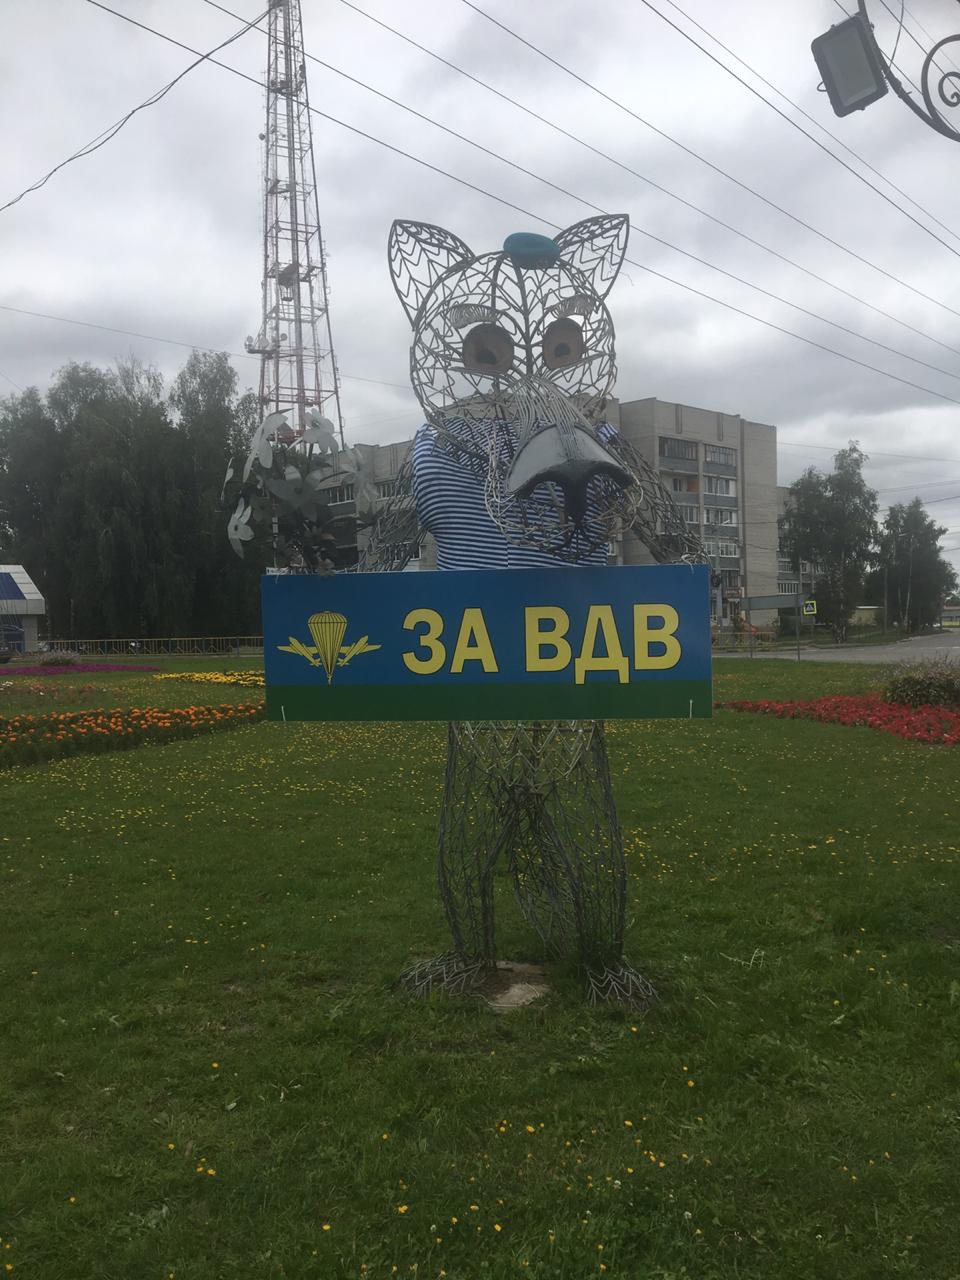 Брянск готовится встретить День ВДВ.Часть дорог в городе будет перекрыта